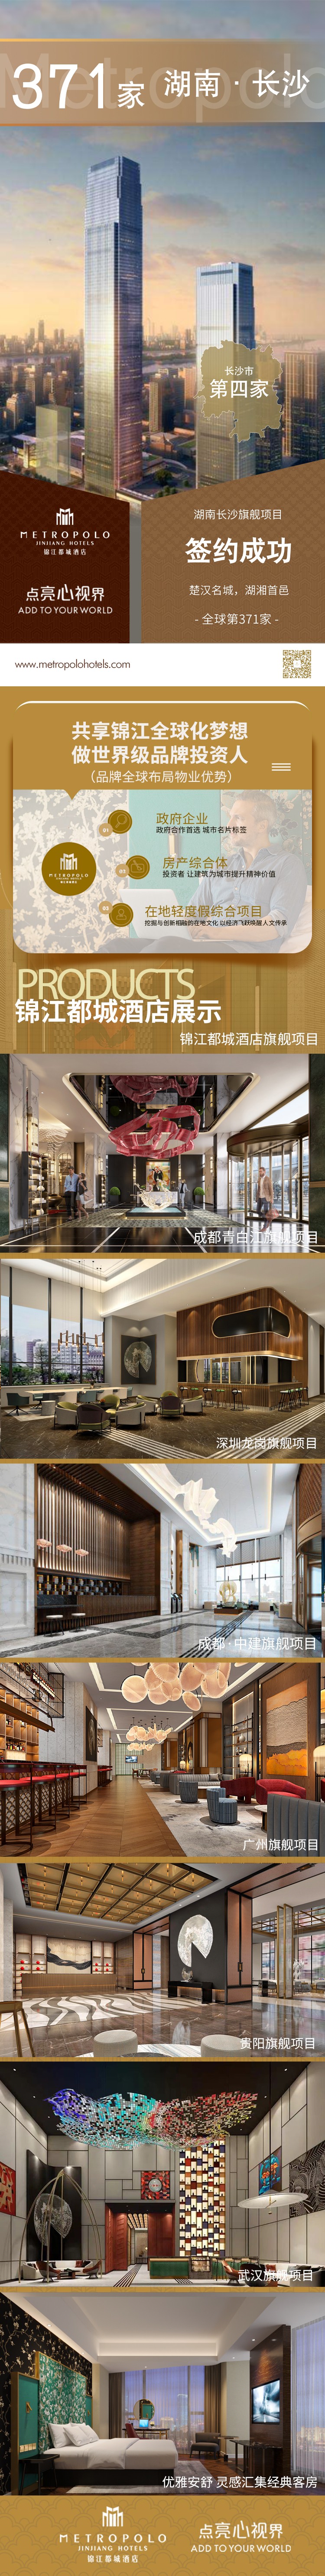 新店签约丨锦江都城酒店全球第371家酒店--湖南省长沙市旗舰店项目签约成功